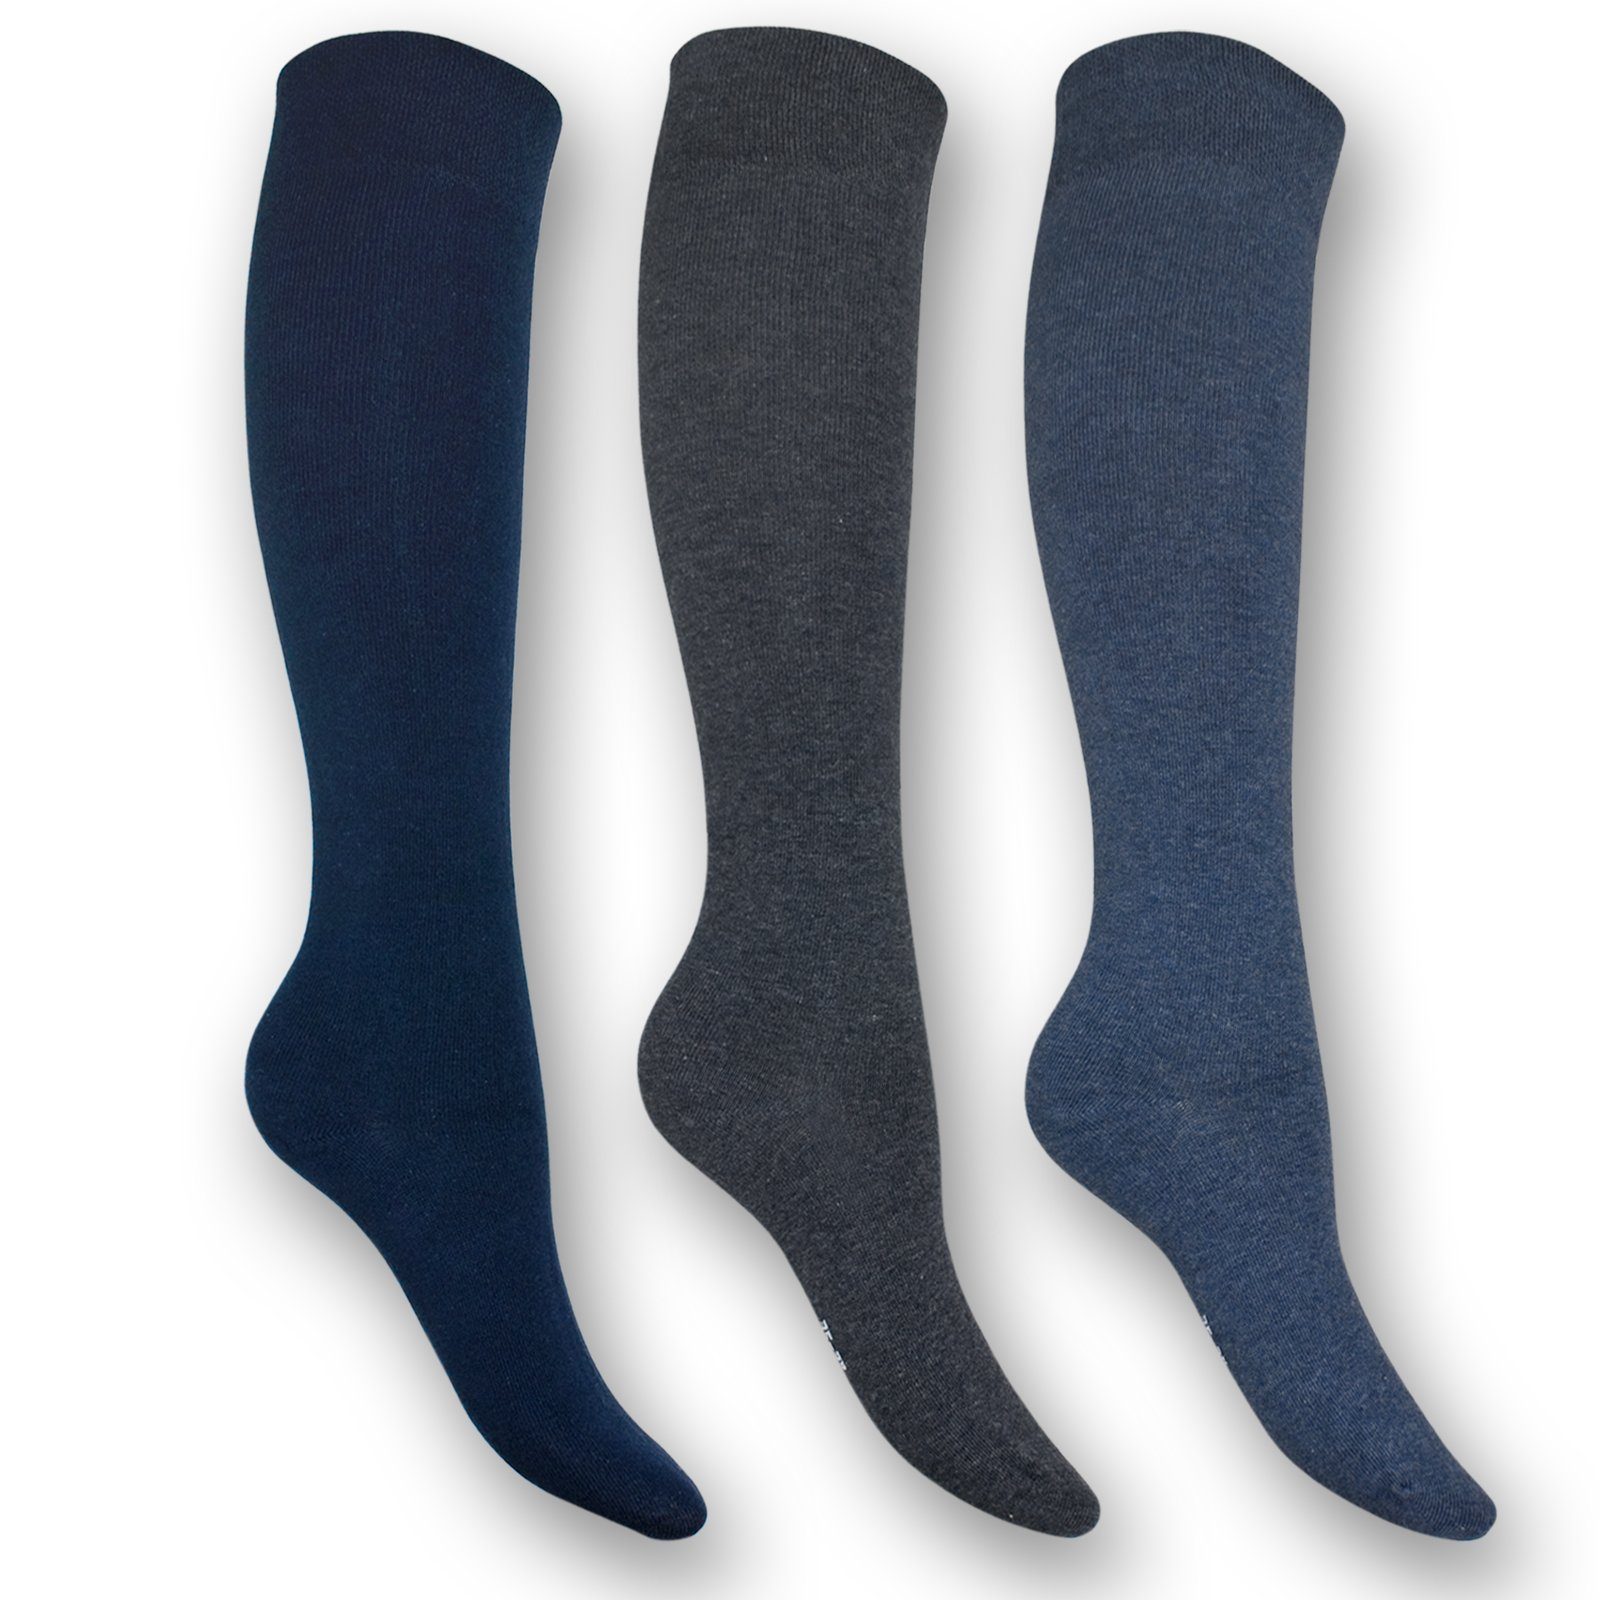 HARMONY mit Grau) Sockenbude Blau (Bund, weichem 3-Paar, Komfortrand Jeanstöne Die Kniestrümpfe